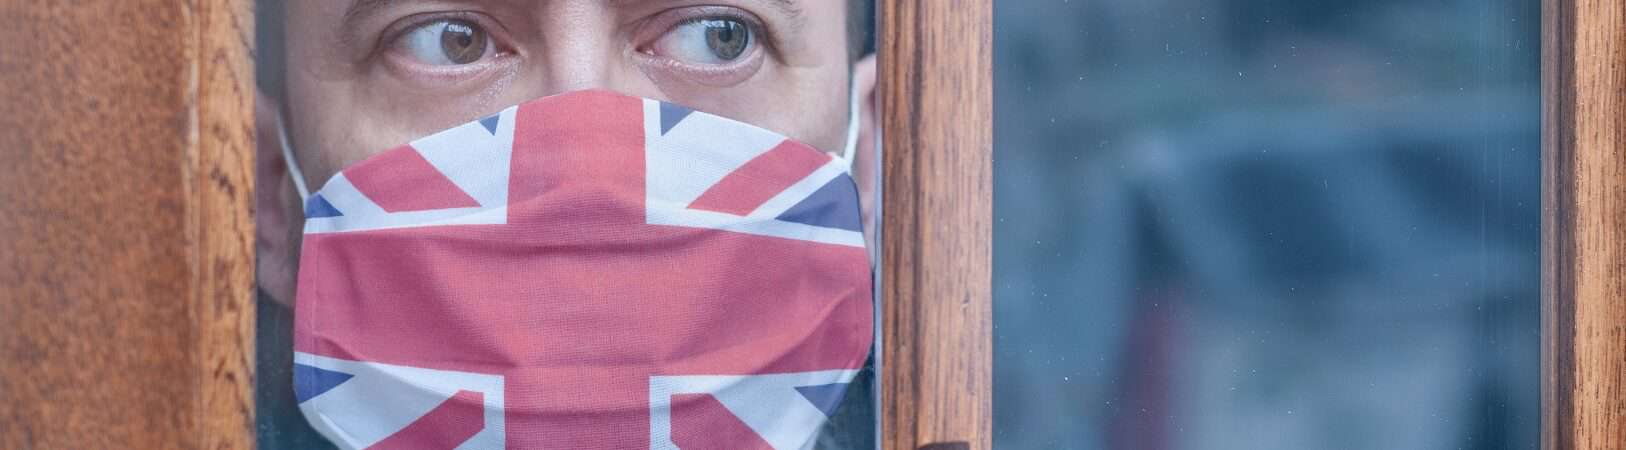 Jovem com uma máscara protetora com uma bandeira britânica olhando pela janela